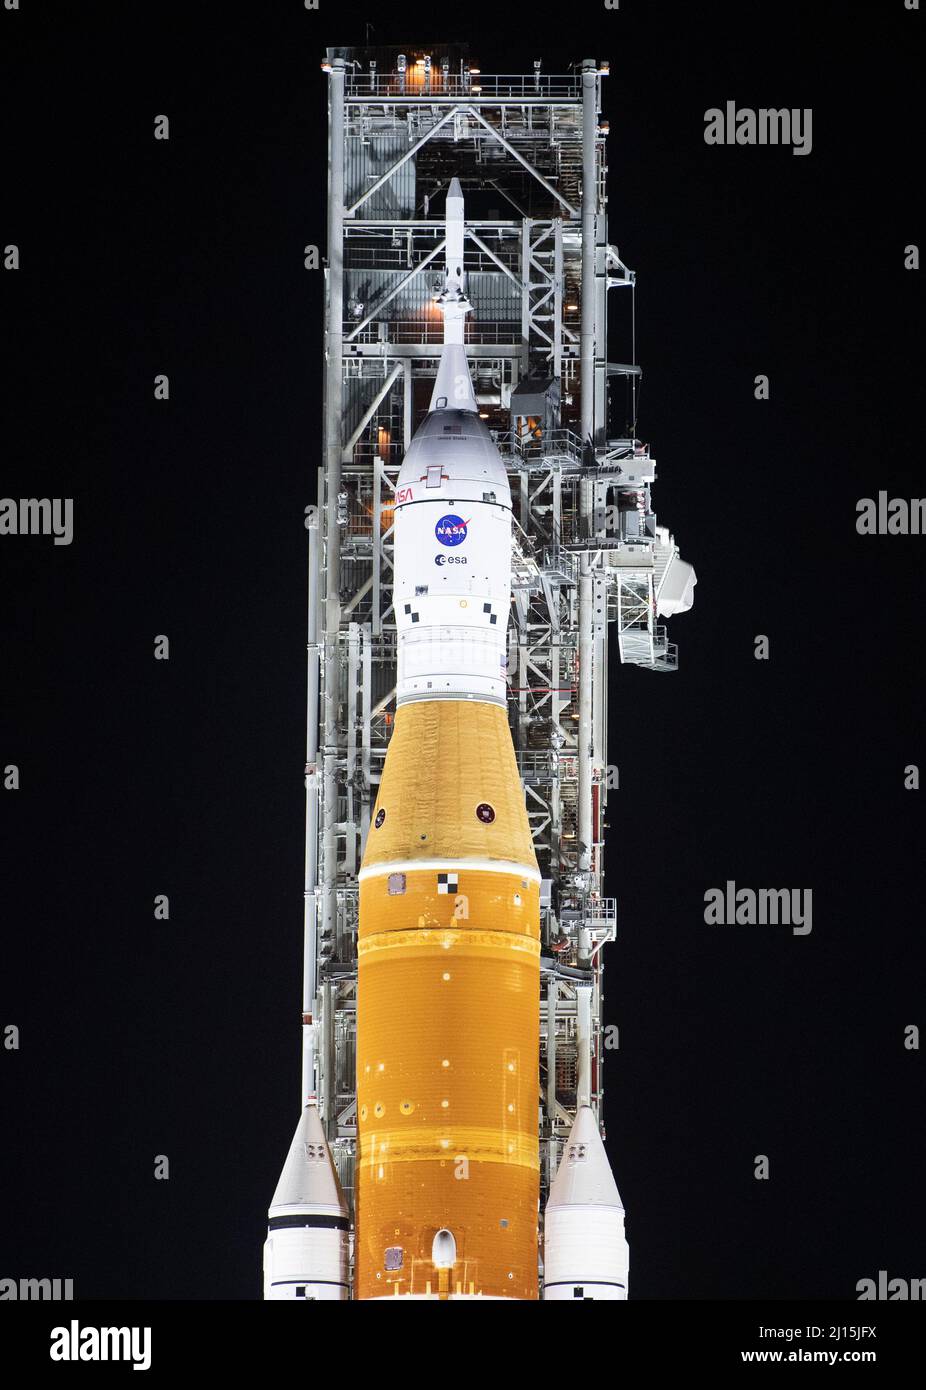 La fusée SLS (Space Launch System) de la NASA à bord de l'engin spatial Orion est illuminée par des projecteurs au sommet d'un lanceur mobile au Launch Complex 39B, le vendredi 18 mars 2022, après avoir été lancée pour la première fois sur le plateau de lancement au Kennedy Space Center de la NASA en Floride. Avant l'essai en vol Artemis I de la NASA, la fusée SLS et l'engin spatial Orion entièrement empilés et intégrés feront l'objet d'une répétition en robe humide au Launch Complex 39B pour vérifier les systèmes et pratiquer les procédures de compte à rebours pour le premier lancement. Crédit photo : (NASA/Joel Kowsky) Banque D'Images